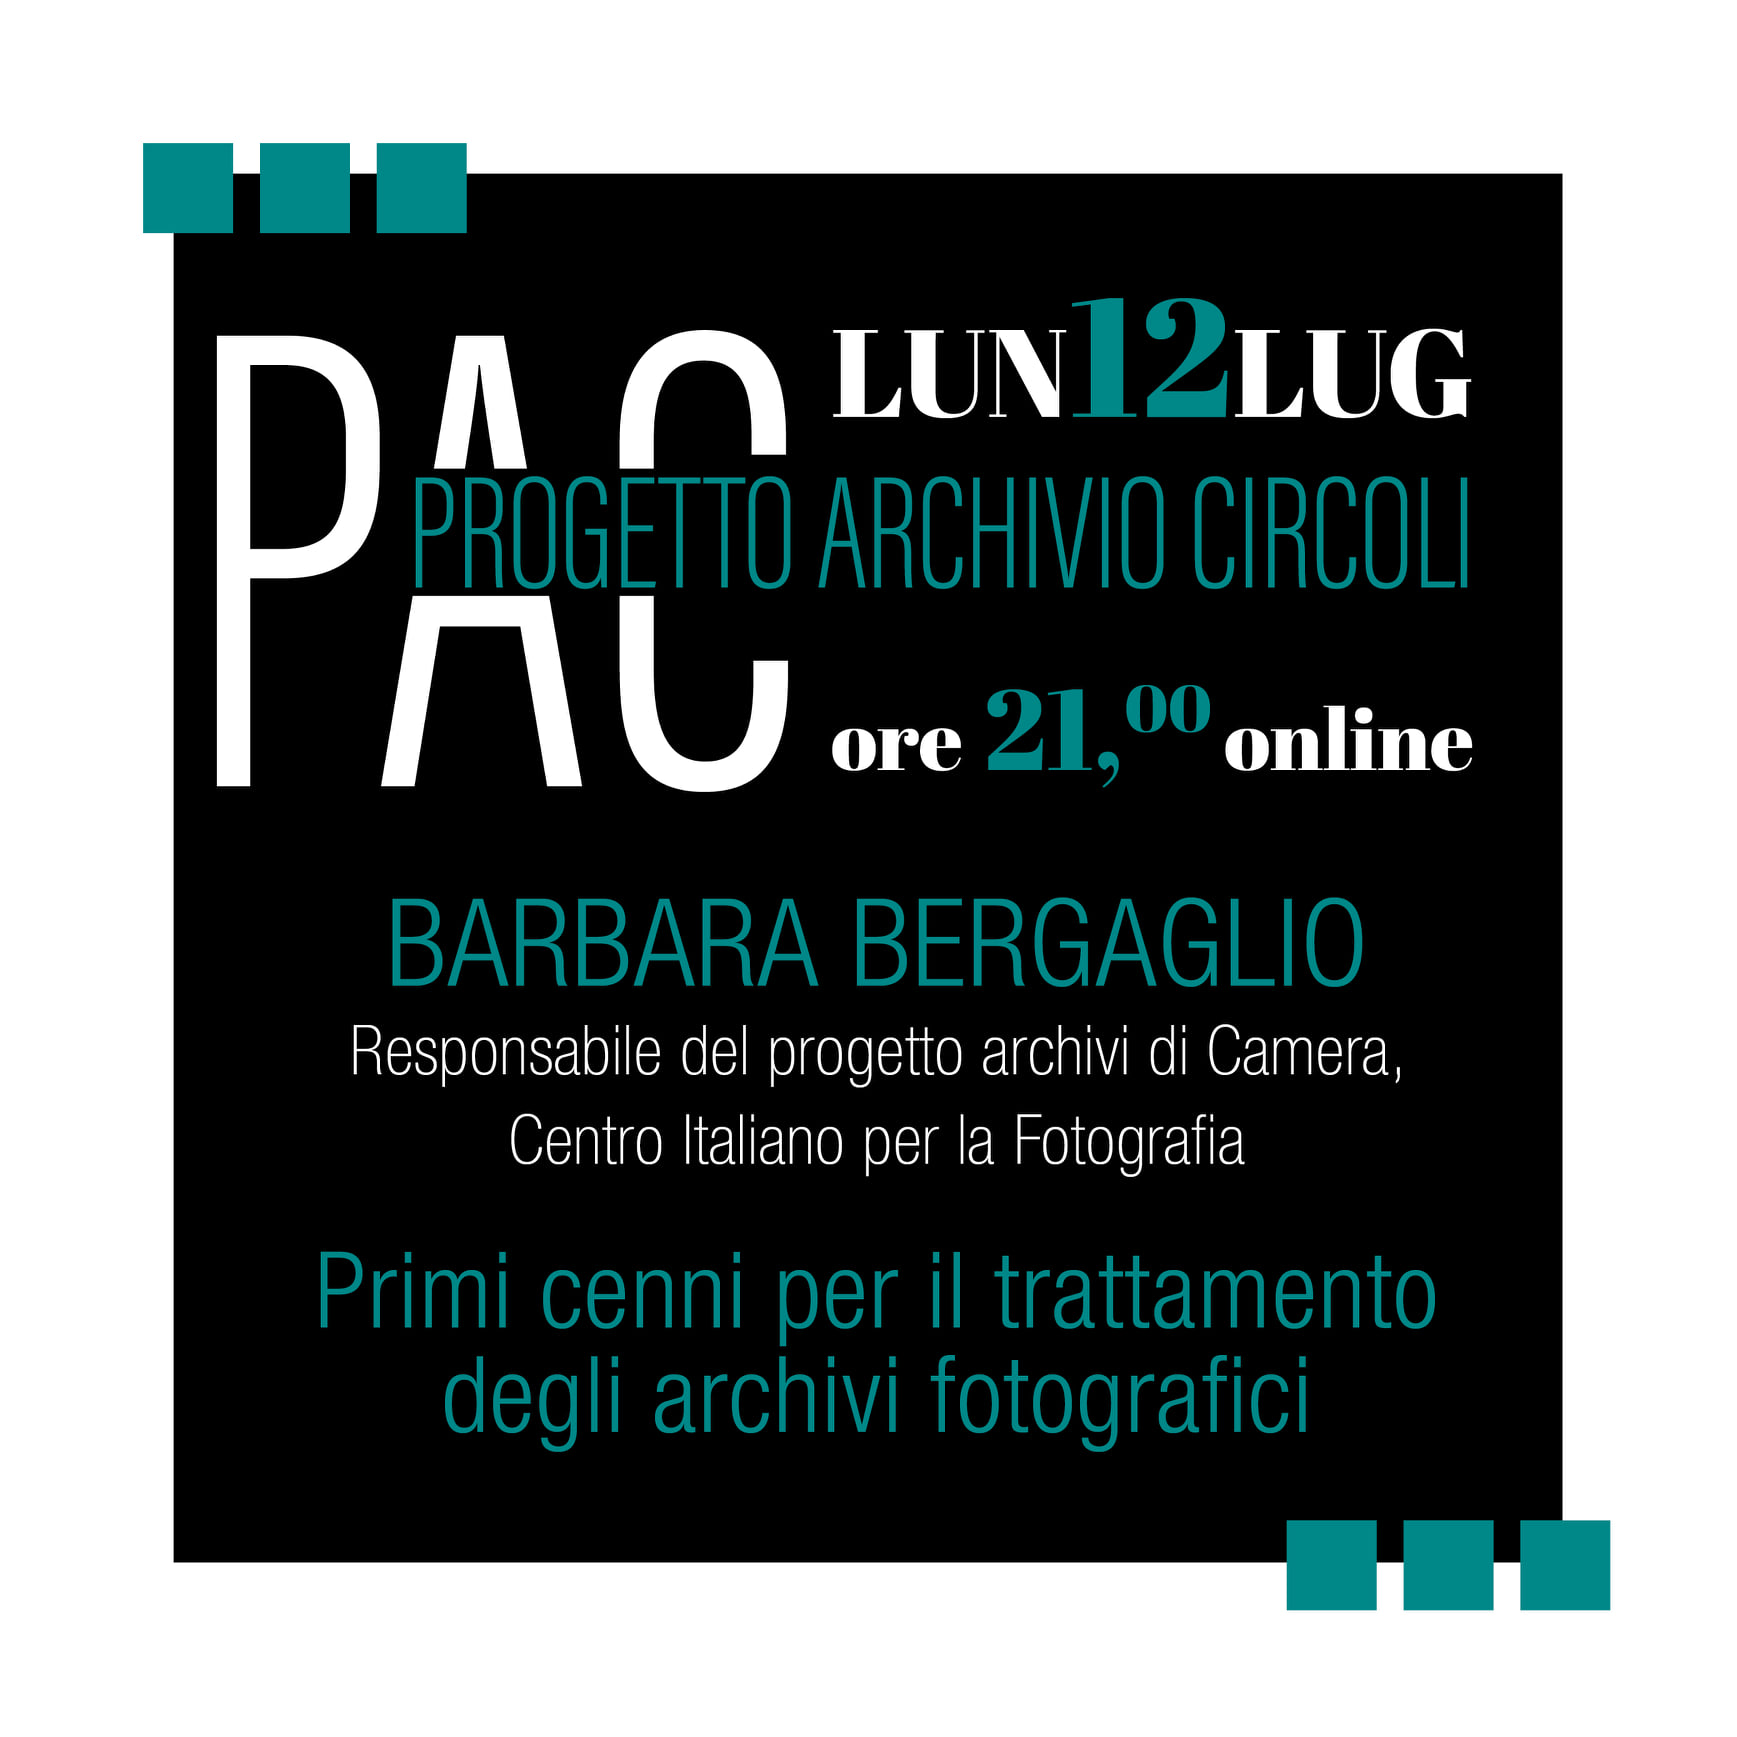 2021 07lug 12 online Progetto archivi circoli Barbara Bergaglio Primi cenni per il trattamento degli archivi fotografici